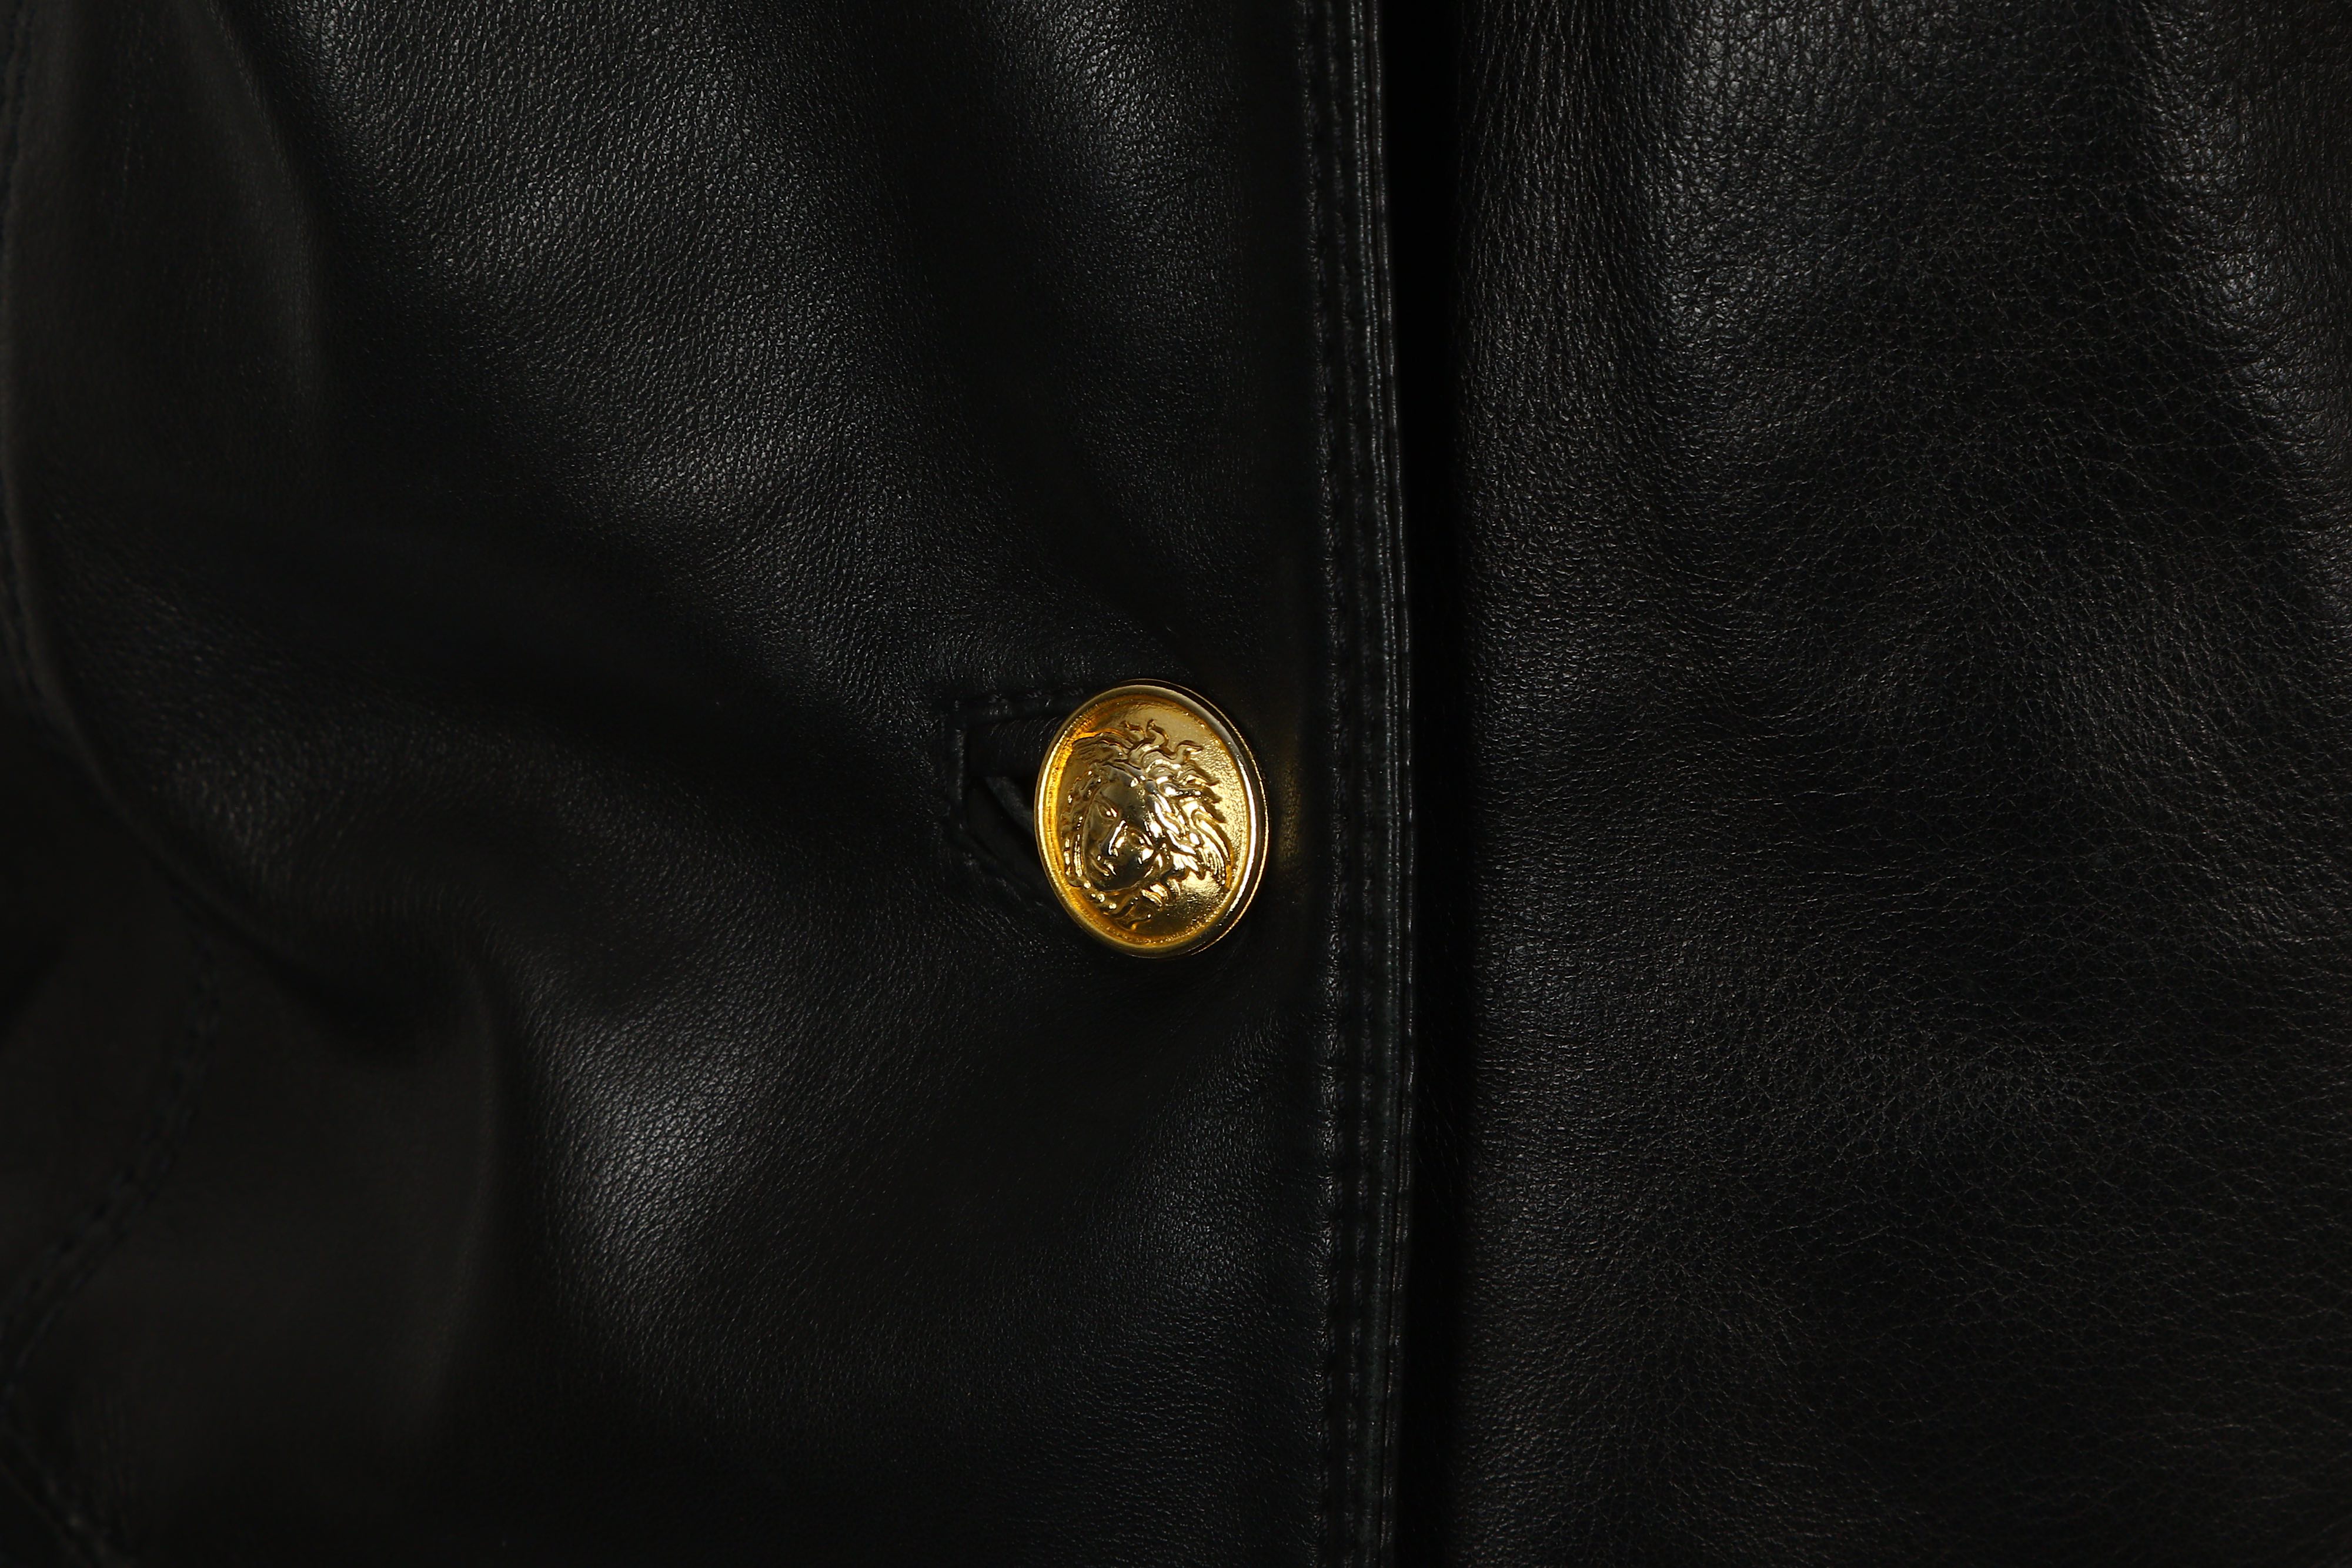 Gianni Versace Black Leather Jacket - Image 6 of 7